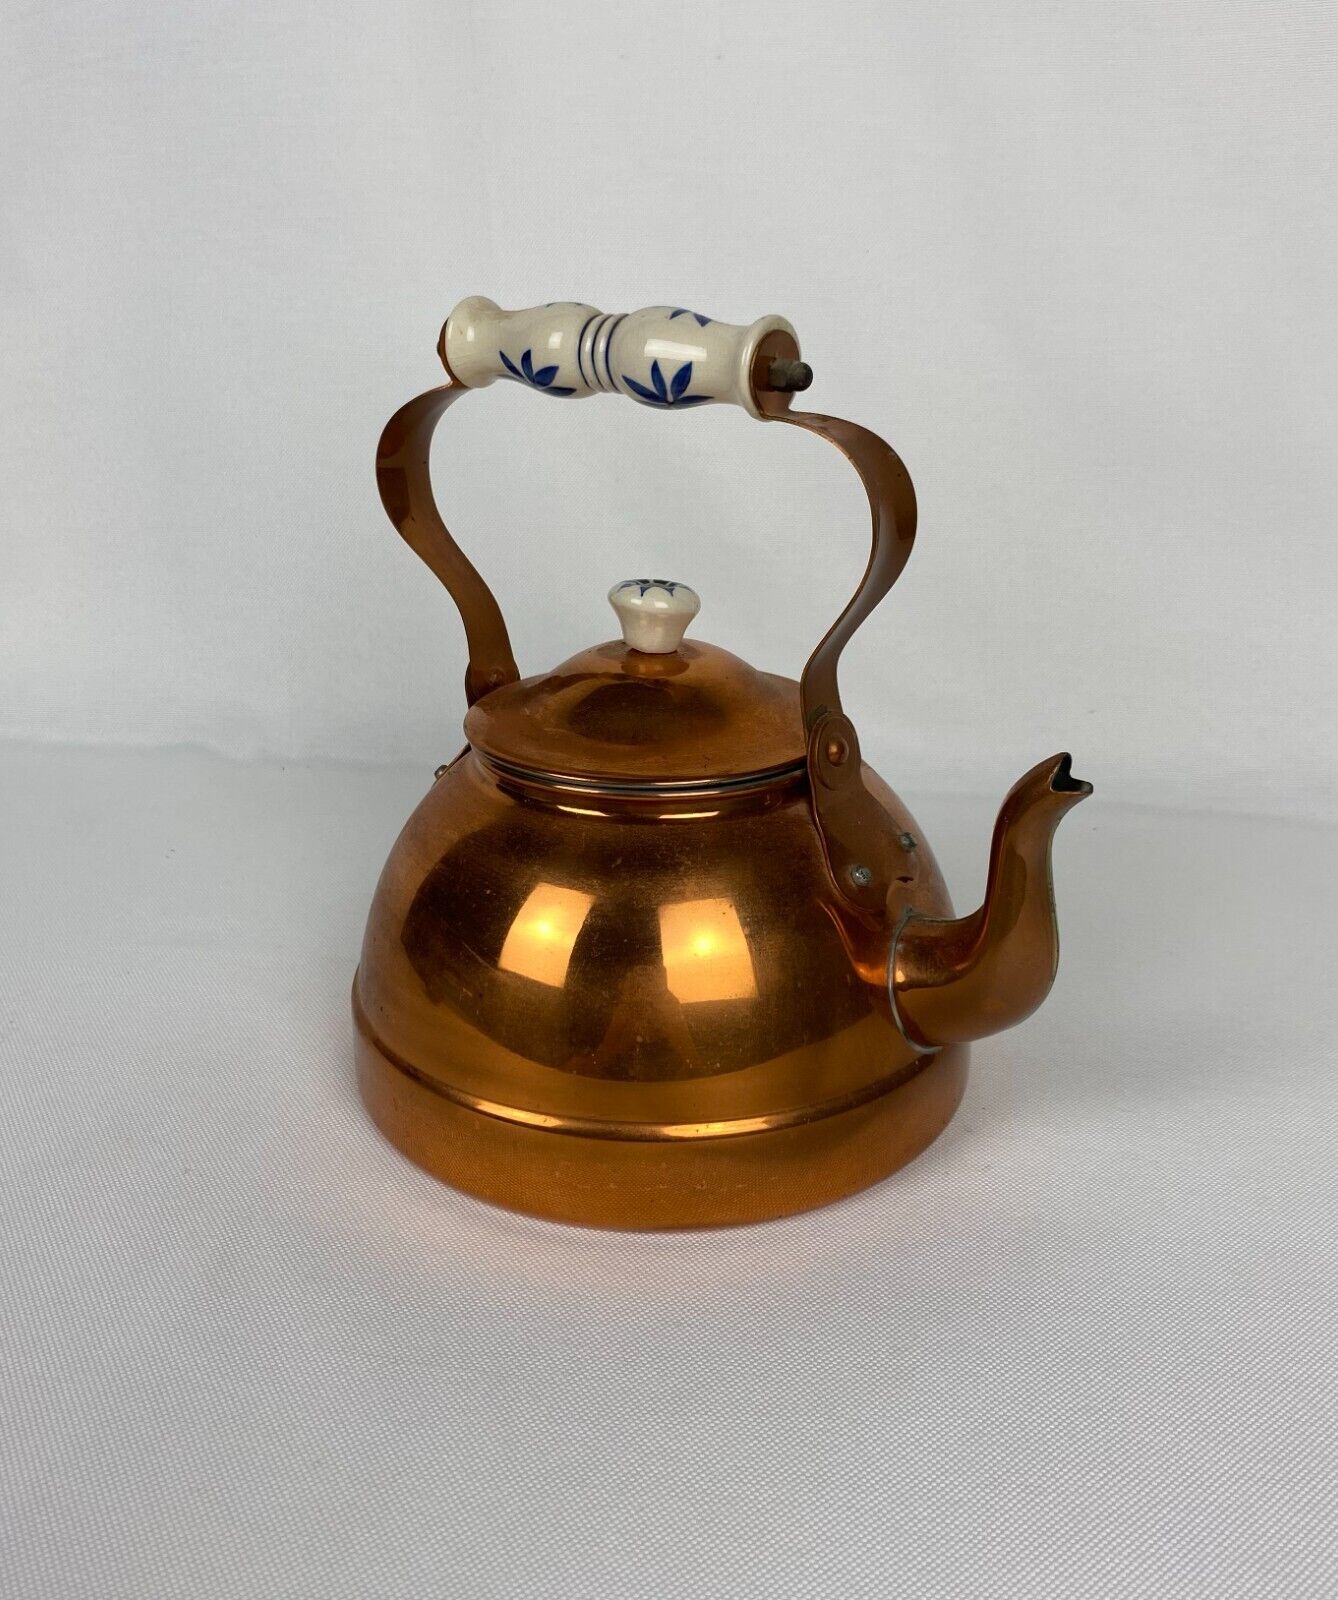 Gorgeous Vintage Copper Kettle Porcelain Handle Copper Object